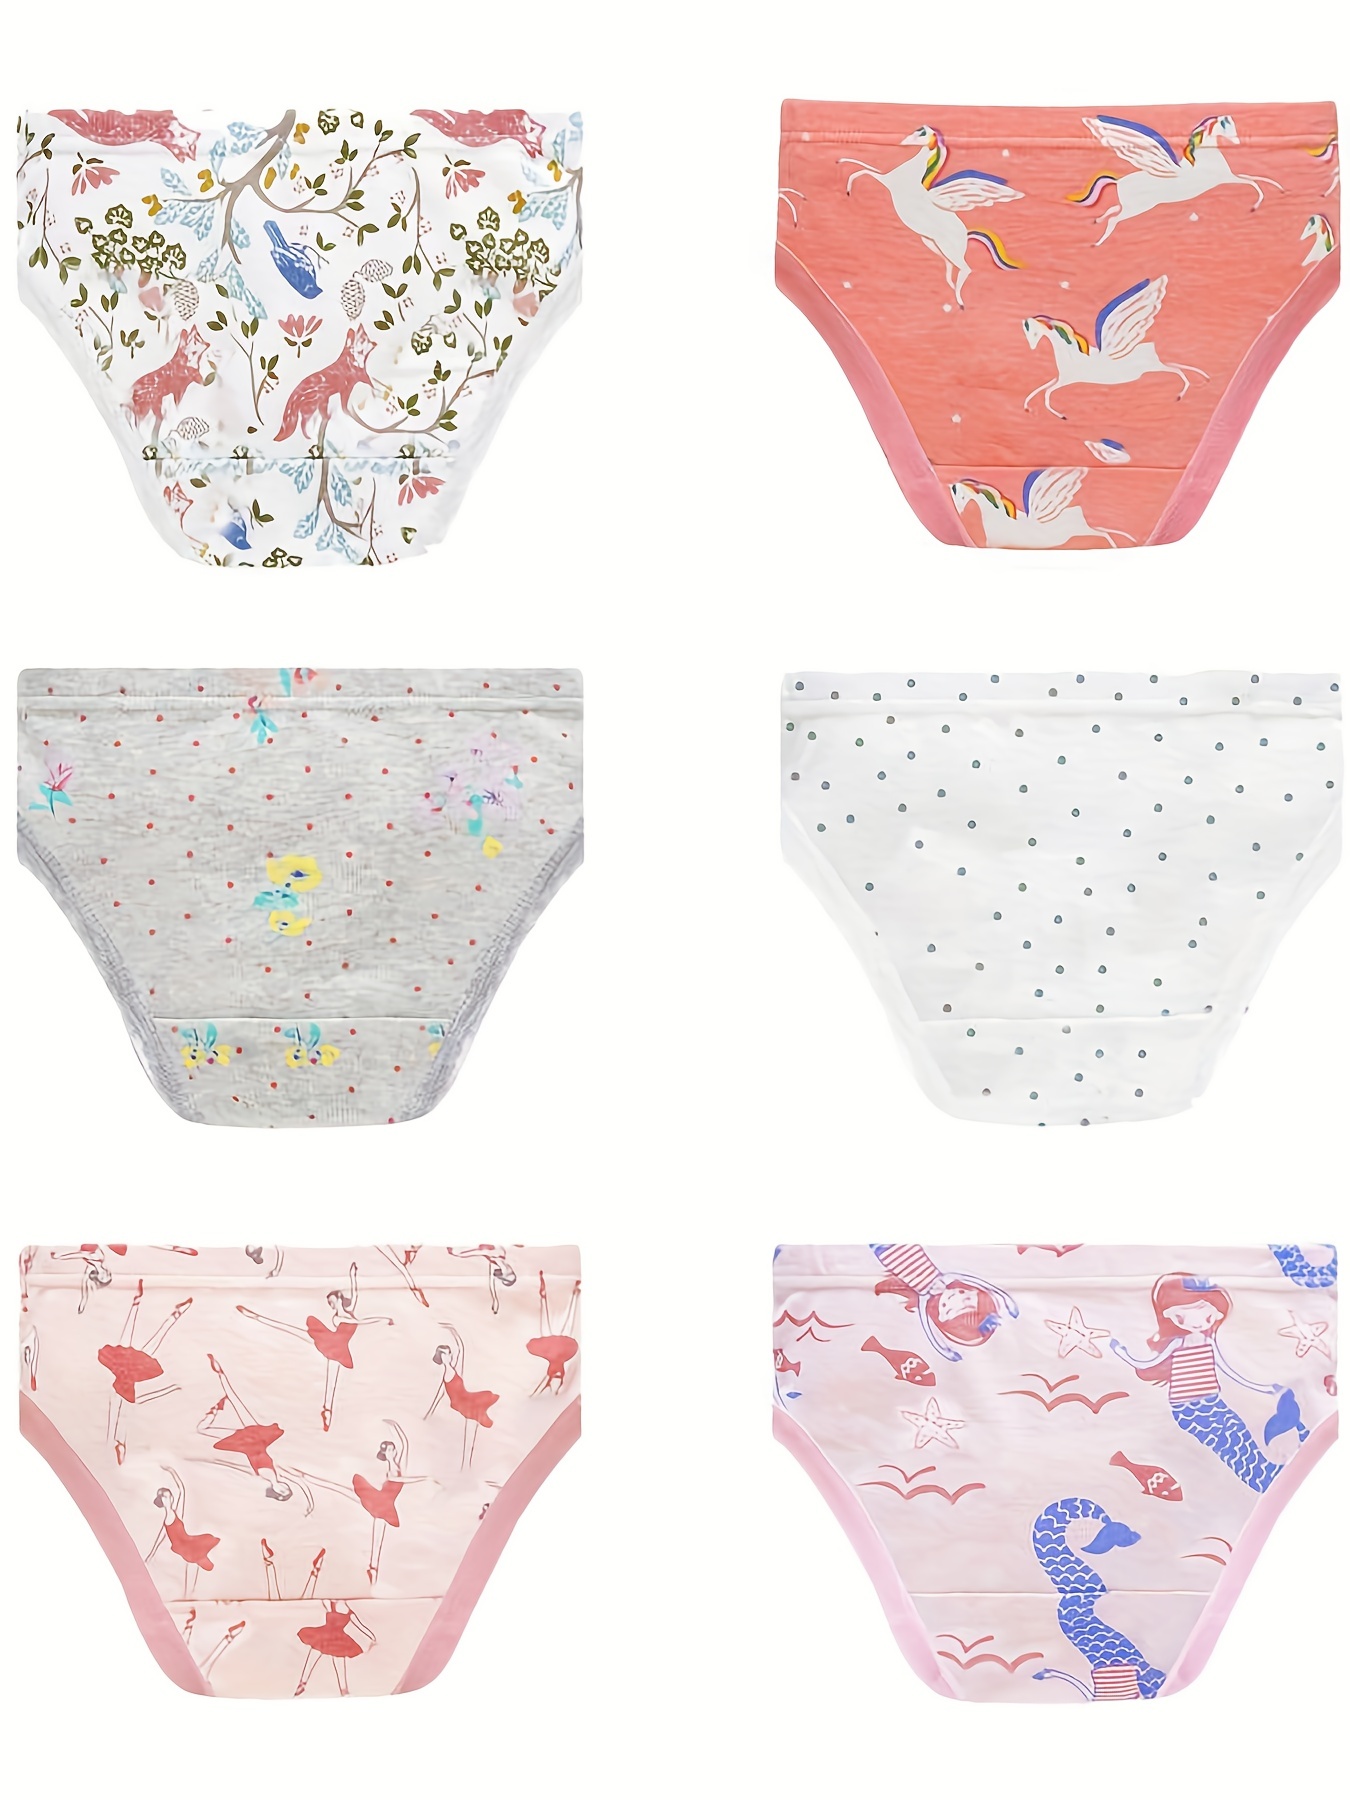 Baby Soft Cotton Panties Little Girls'Briefs Toddler underwear